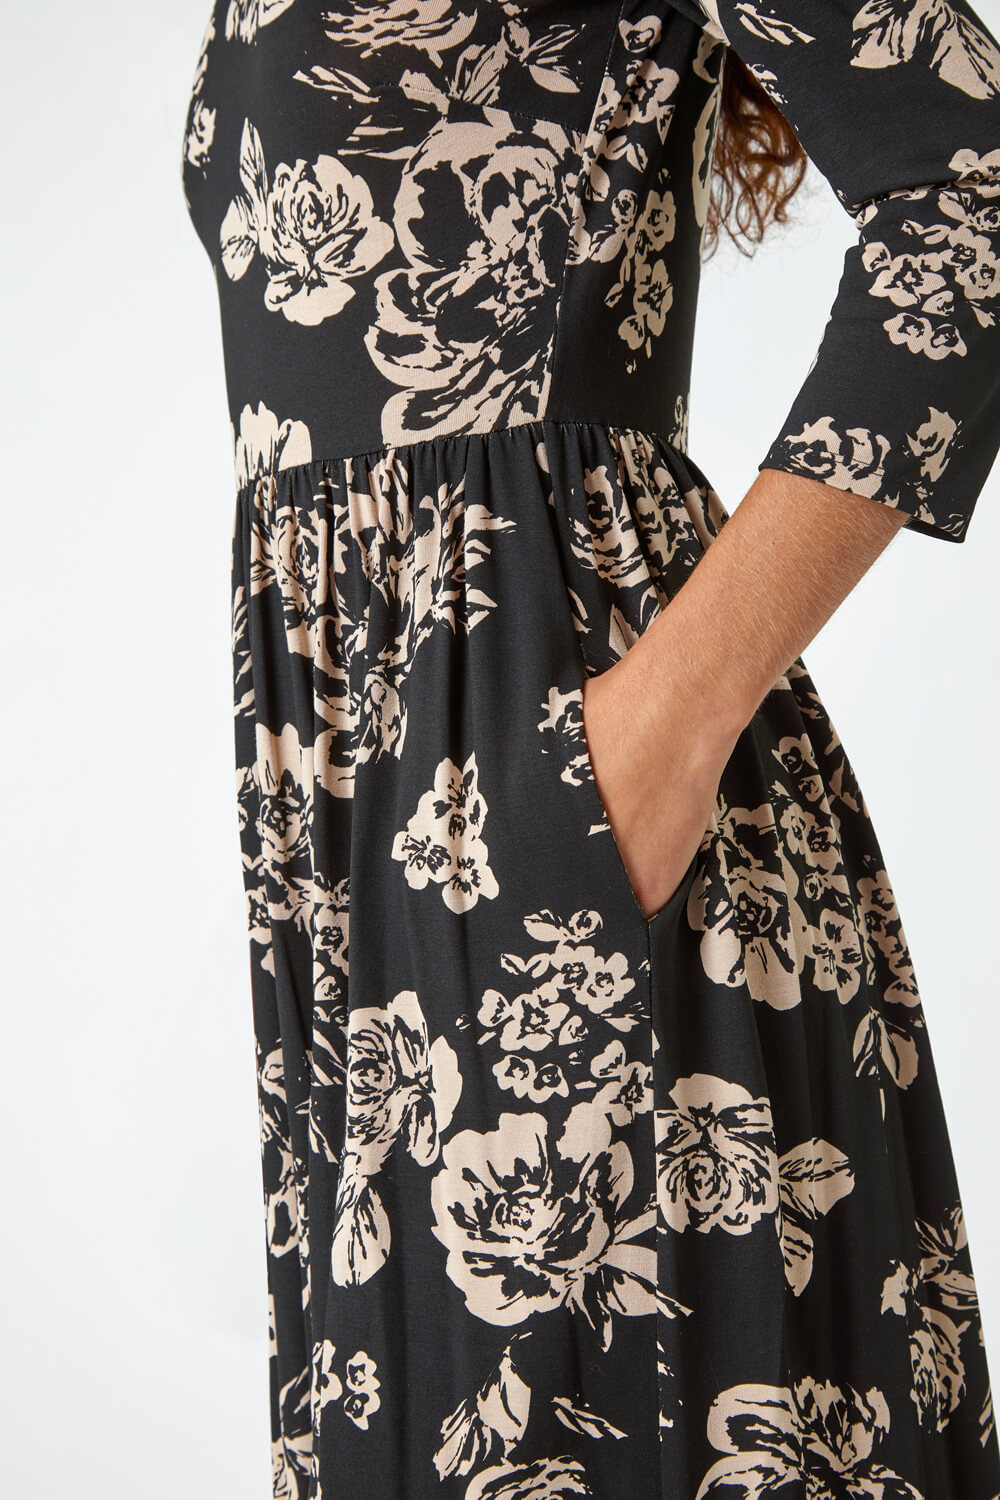 Black Floral Pocket Stretch Midi Dress, Image 5 of 5